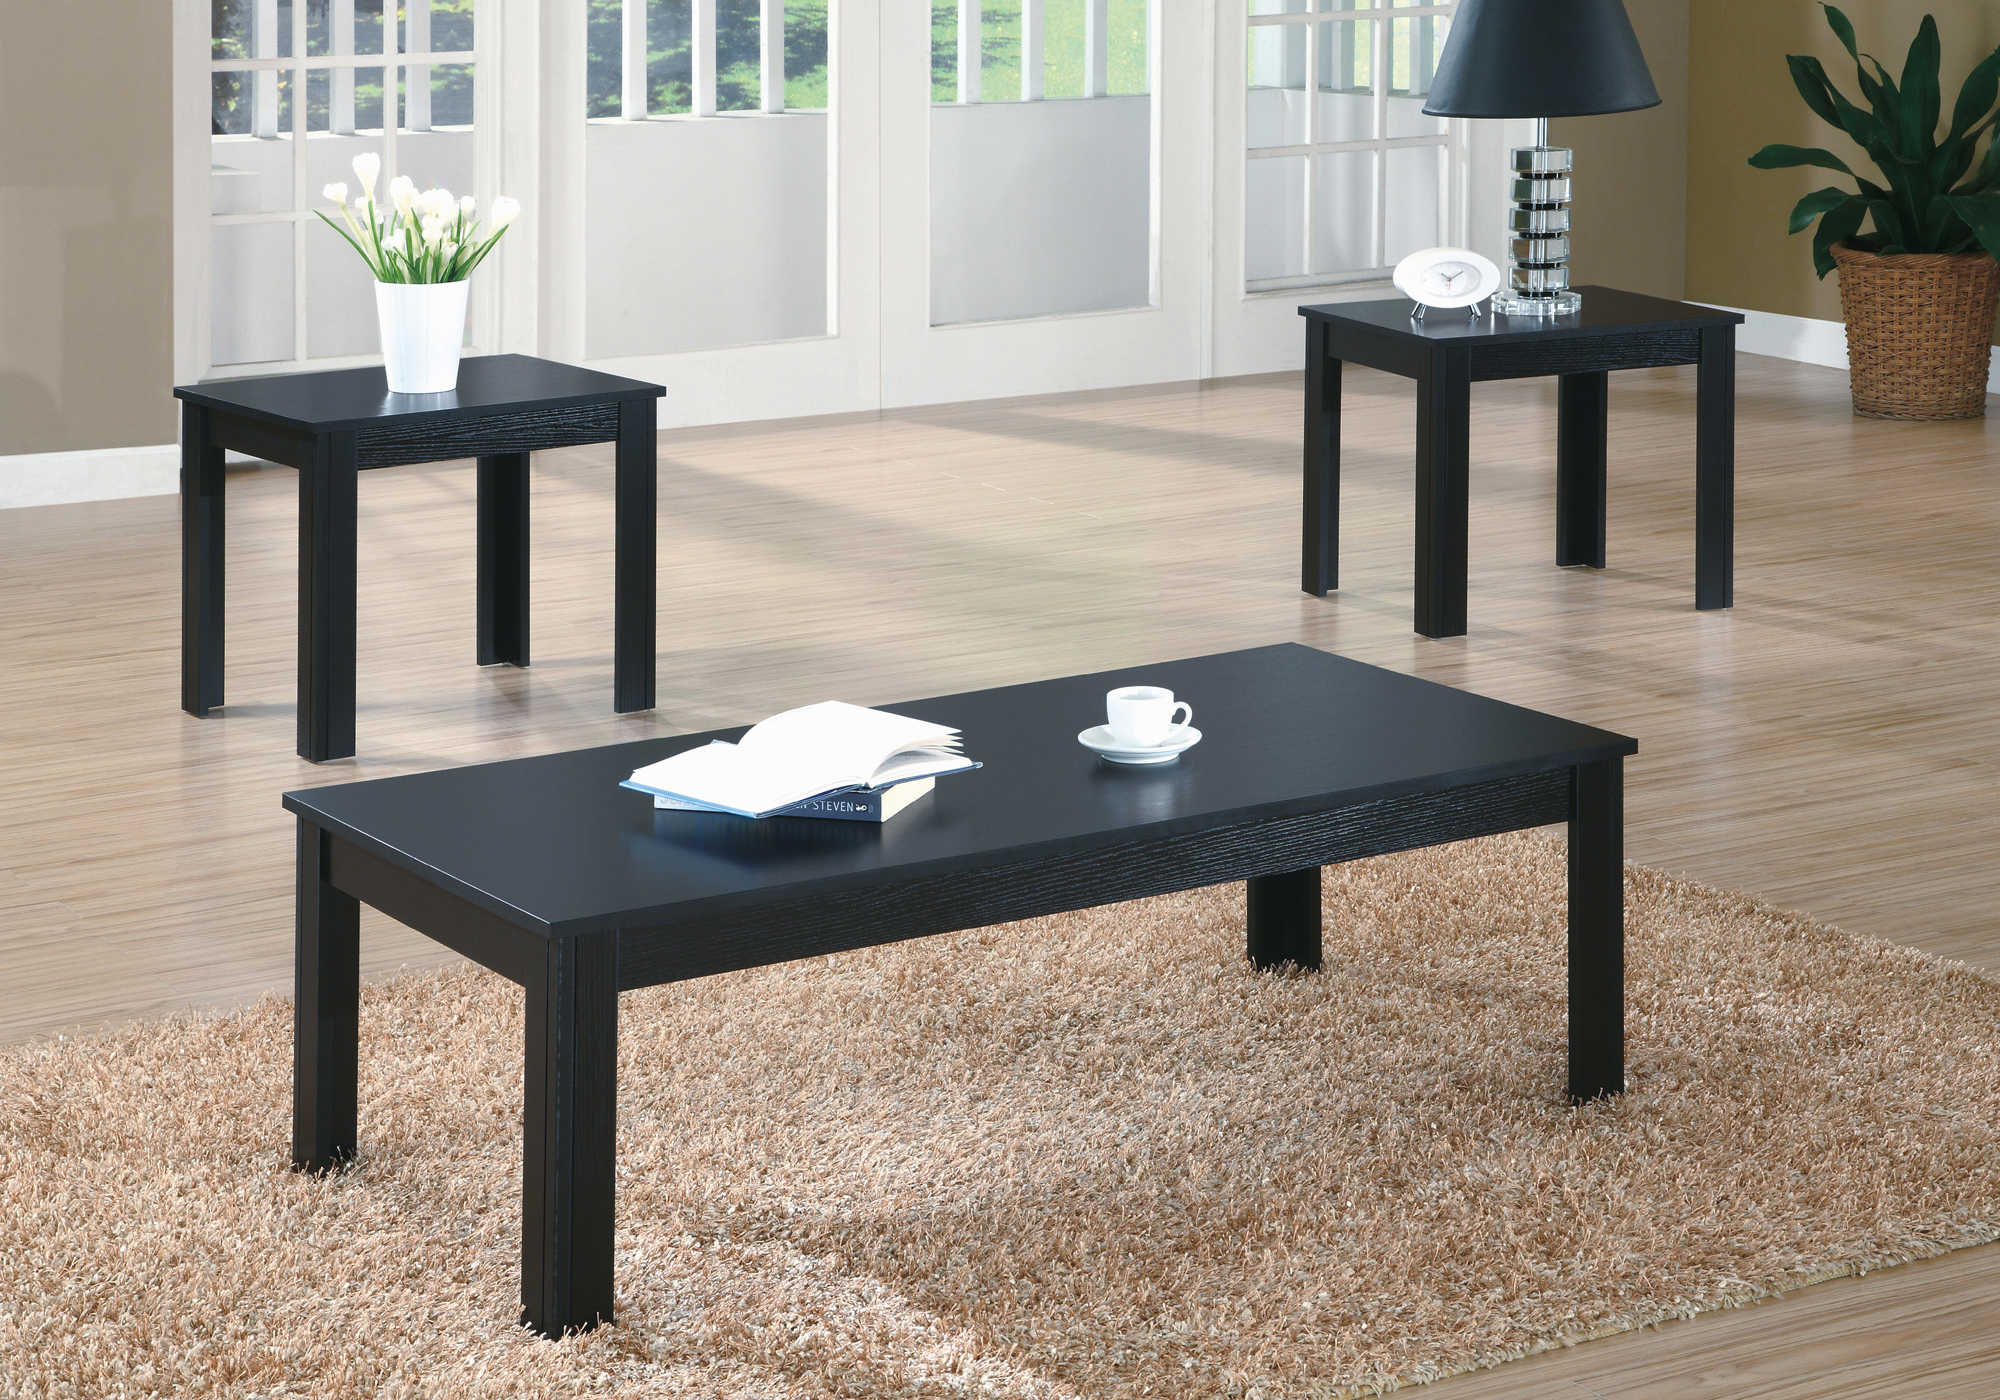 TABLE SET - 3PCS SET / BLACK